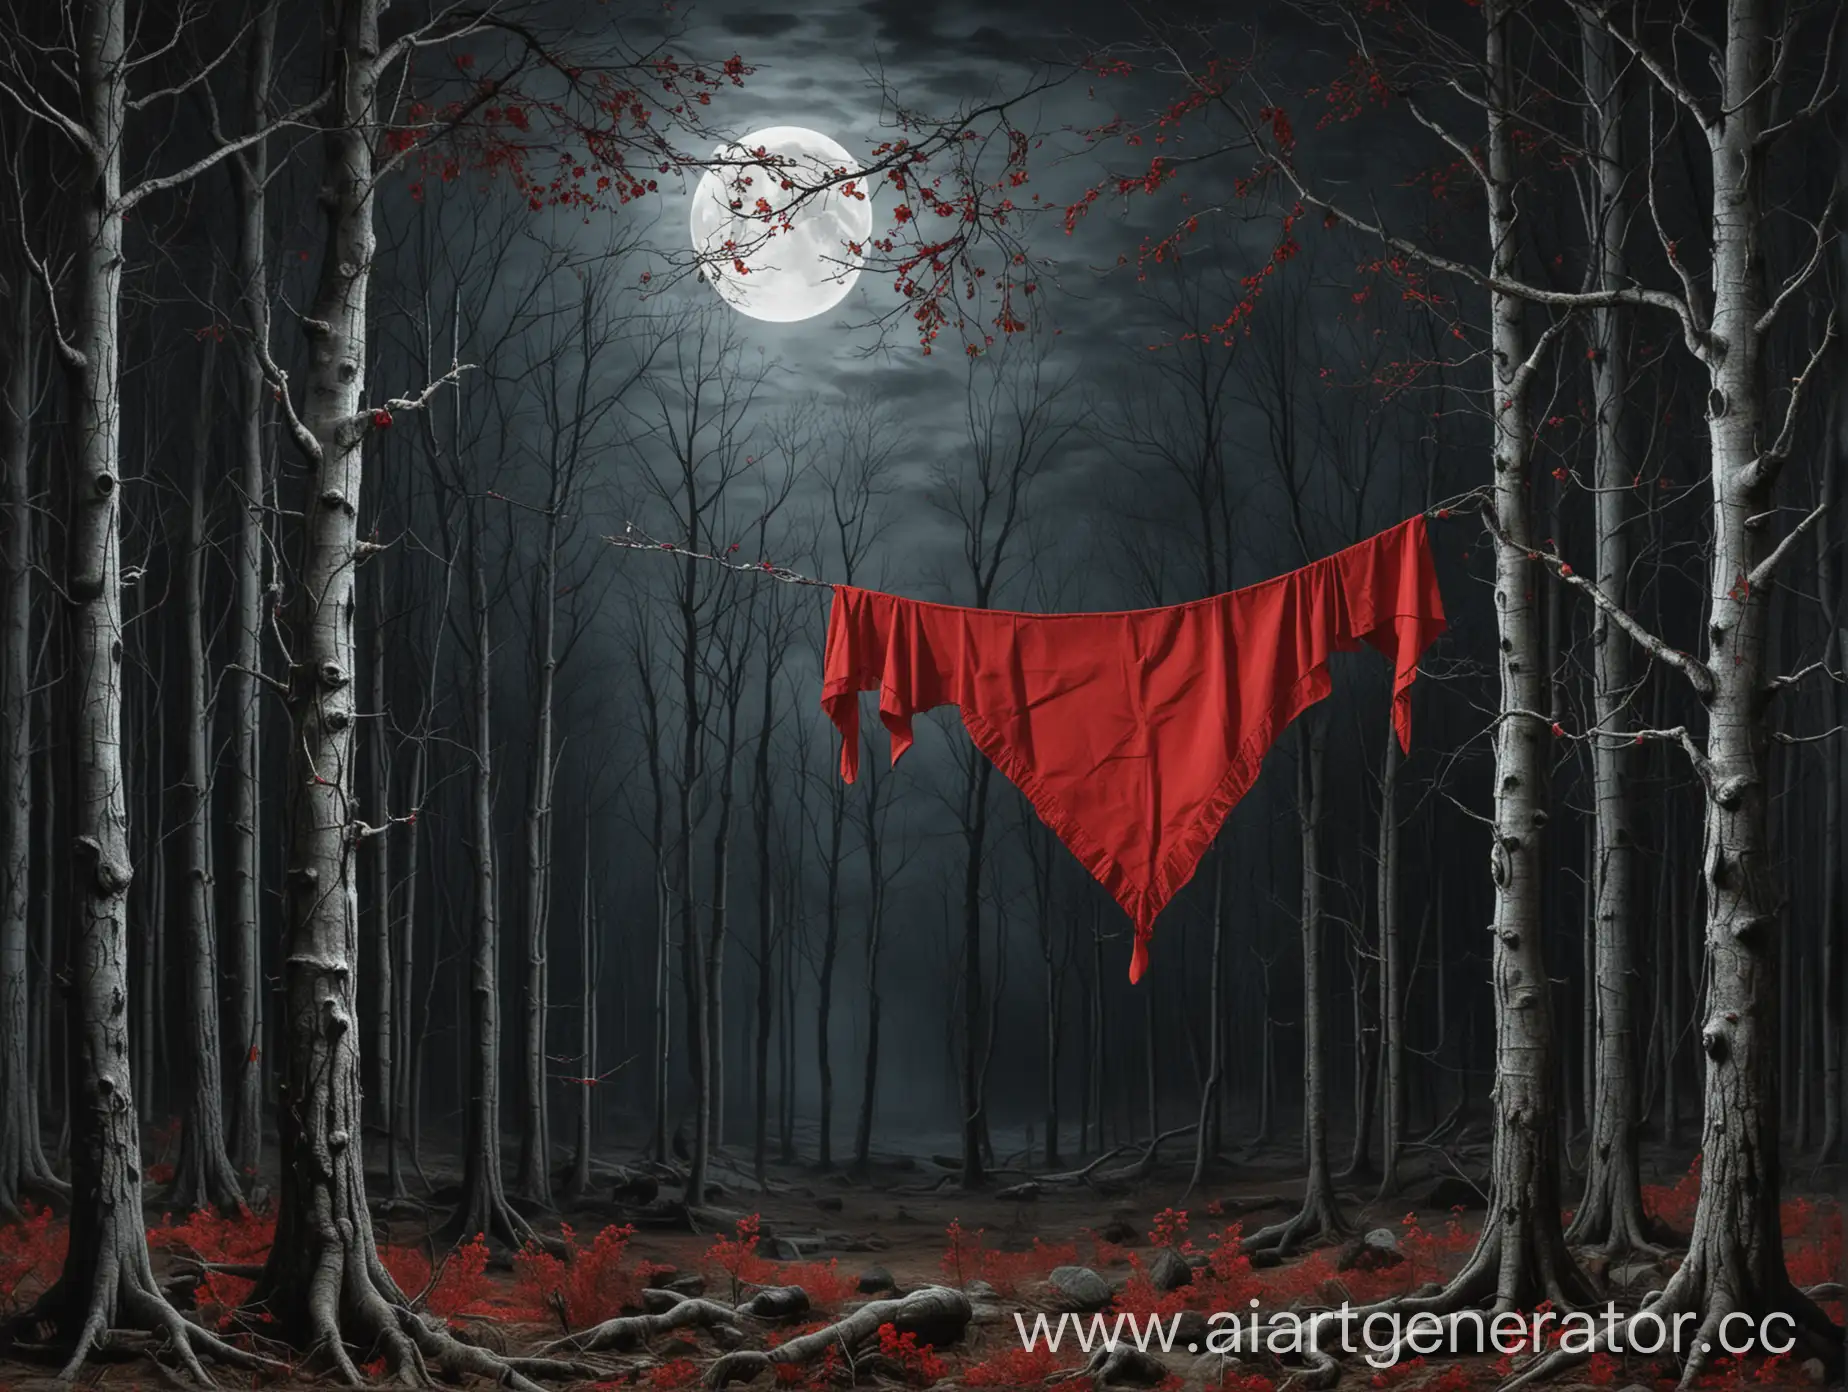 темный лес, луна, на первом плане справа,ветка с висячей красным платком